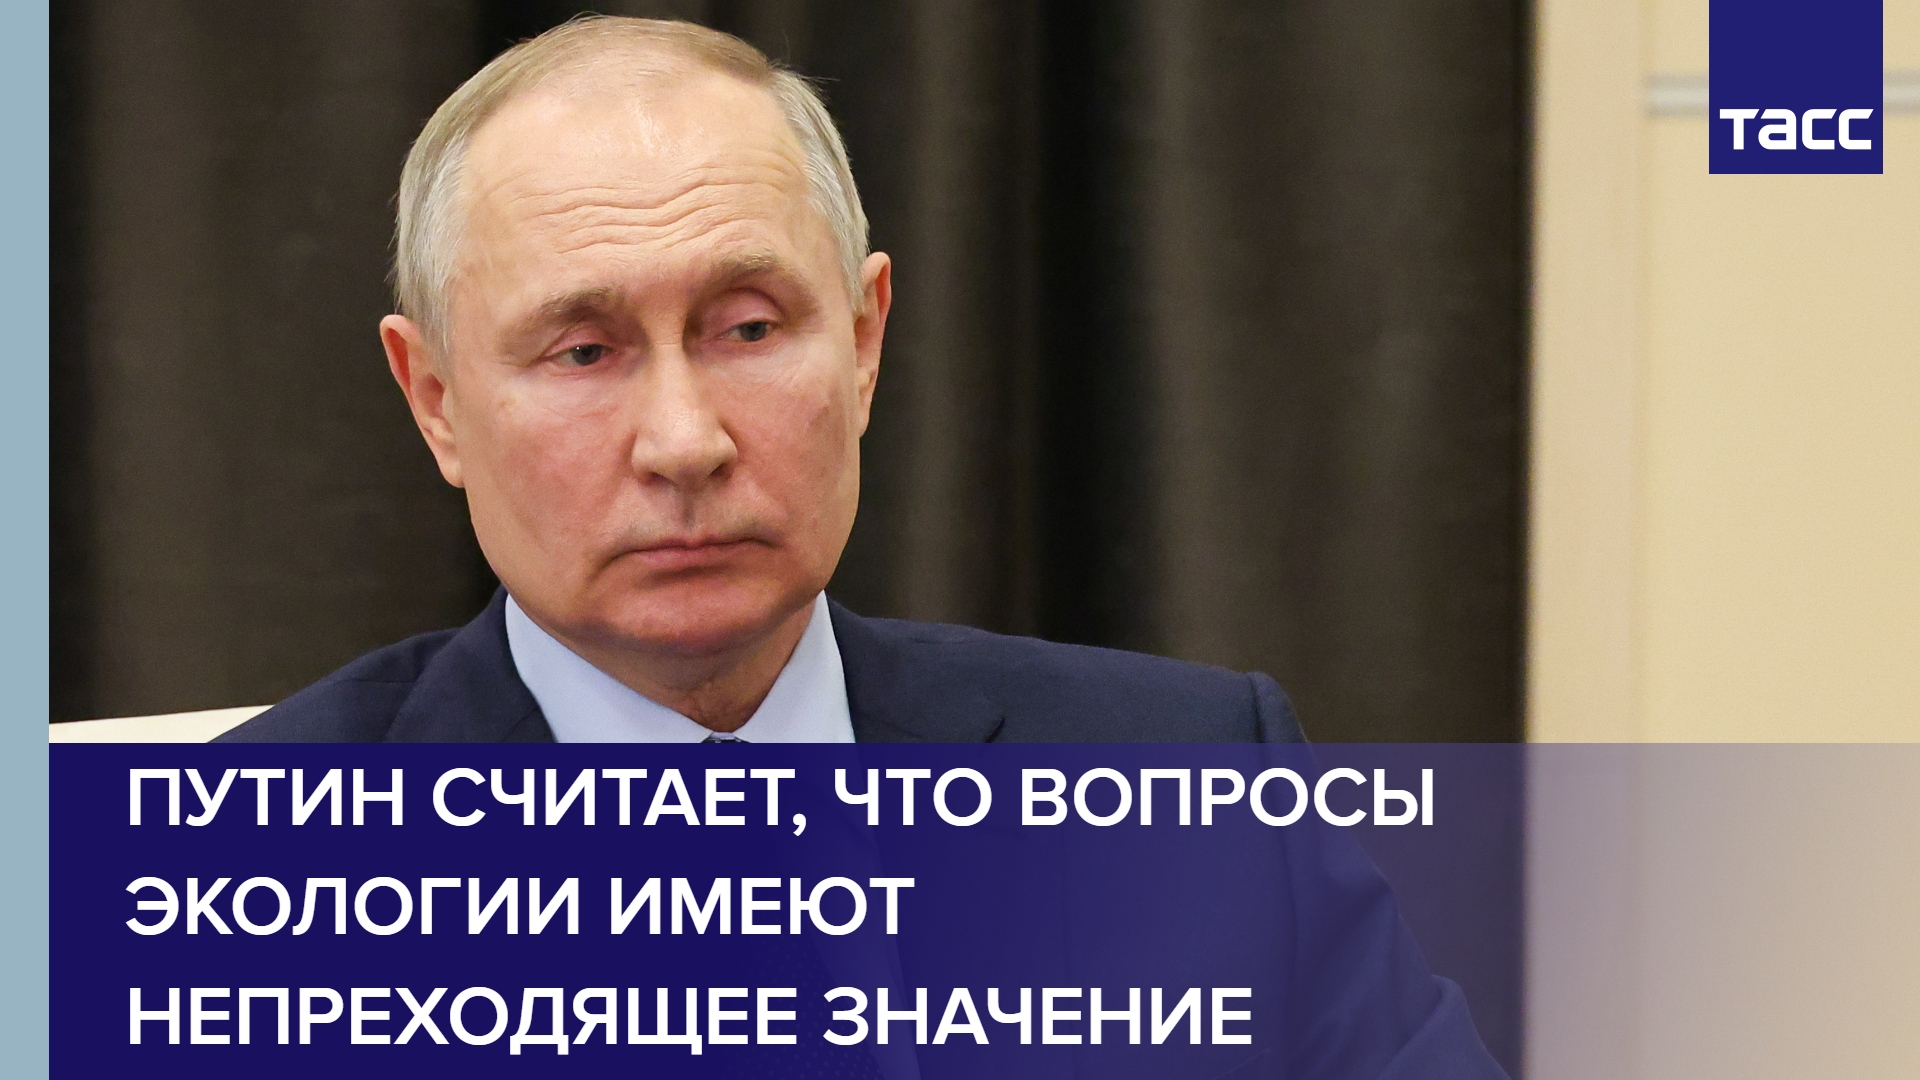 Путин считает, что вопросы экологии имеют непреходящее значение #shorts